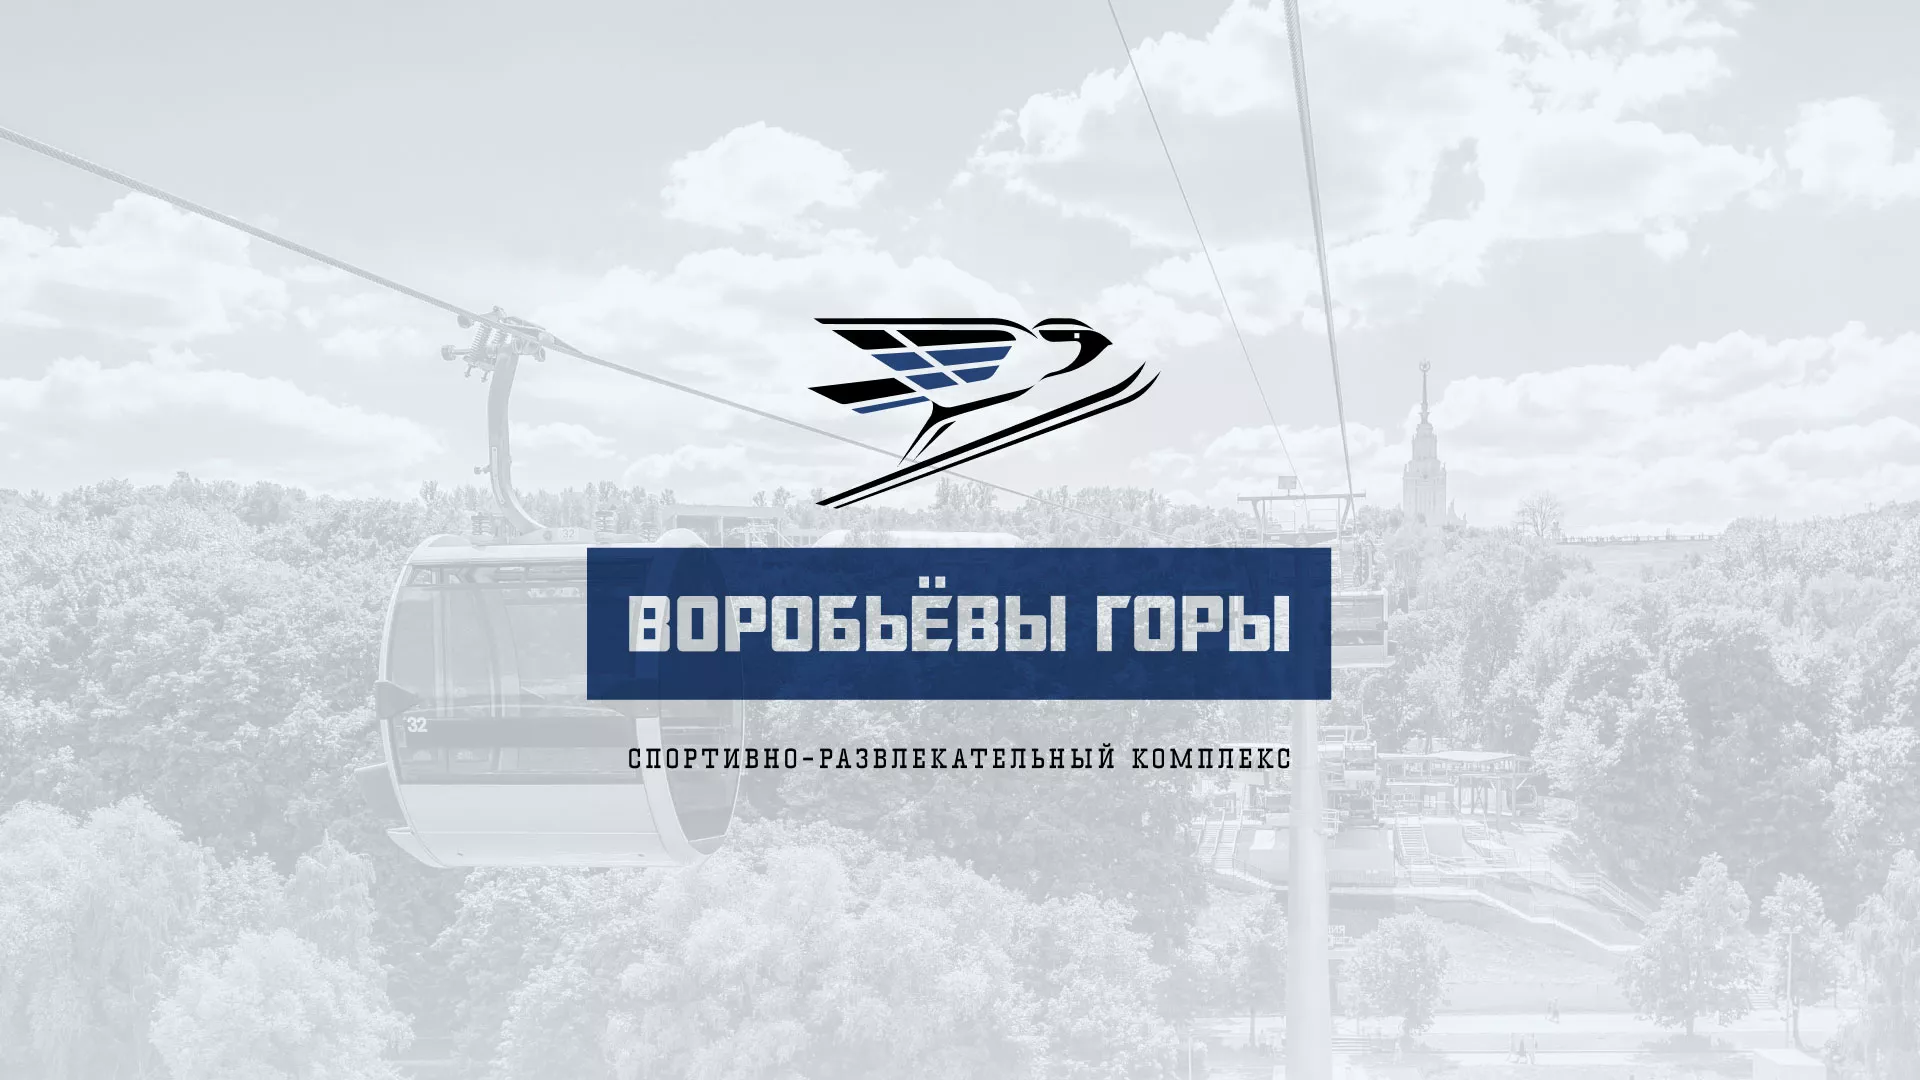 Разработка сайта в Хабаровске для спортивно-развлекательного комплекса «Воробьёвы горы»